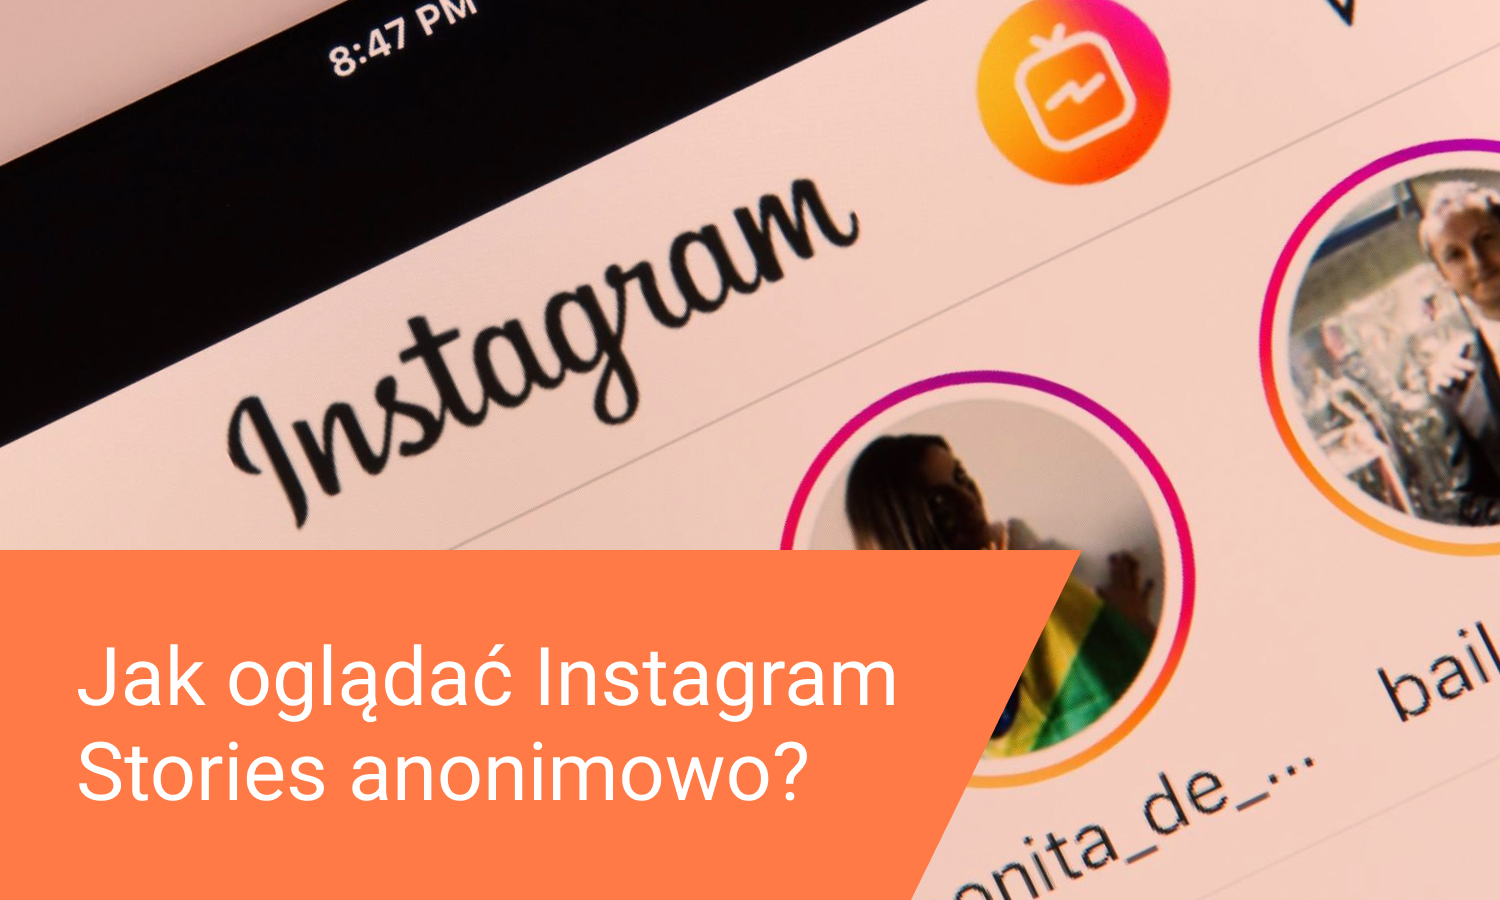 Jak oglądać Instagram Stories anonimowo